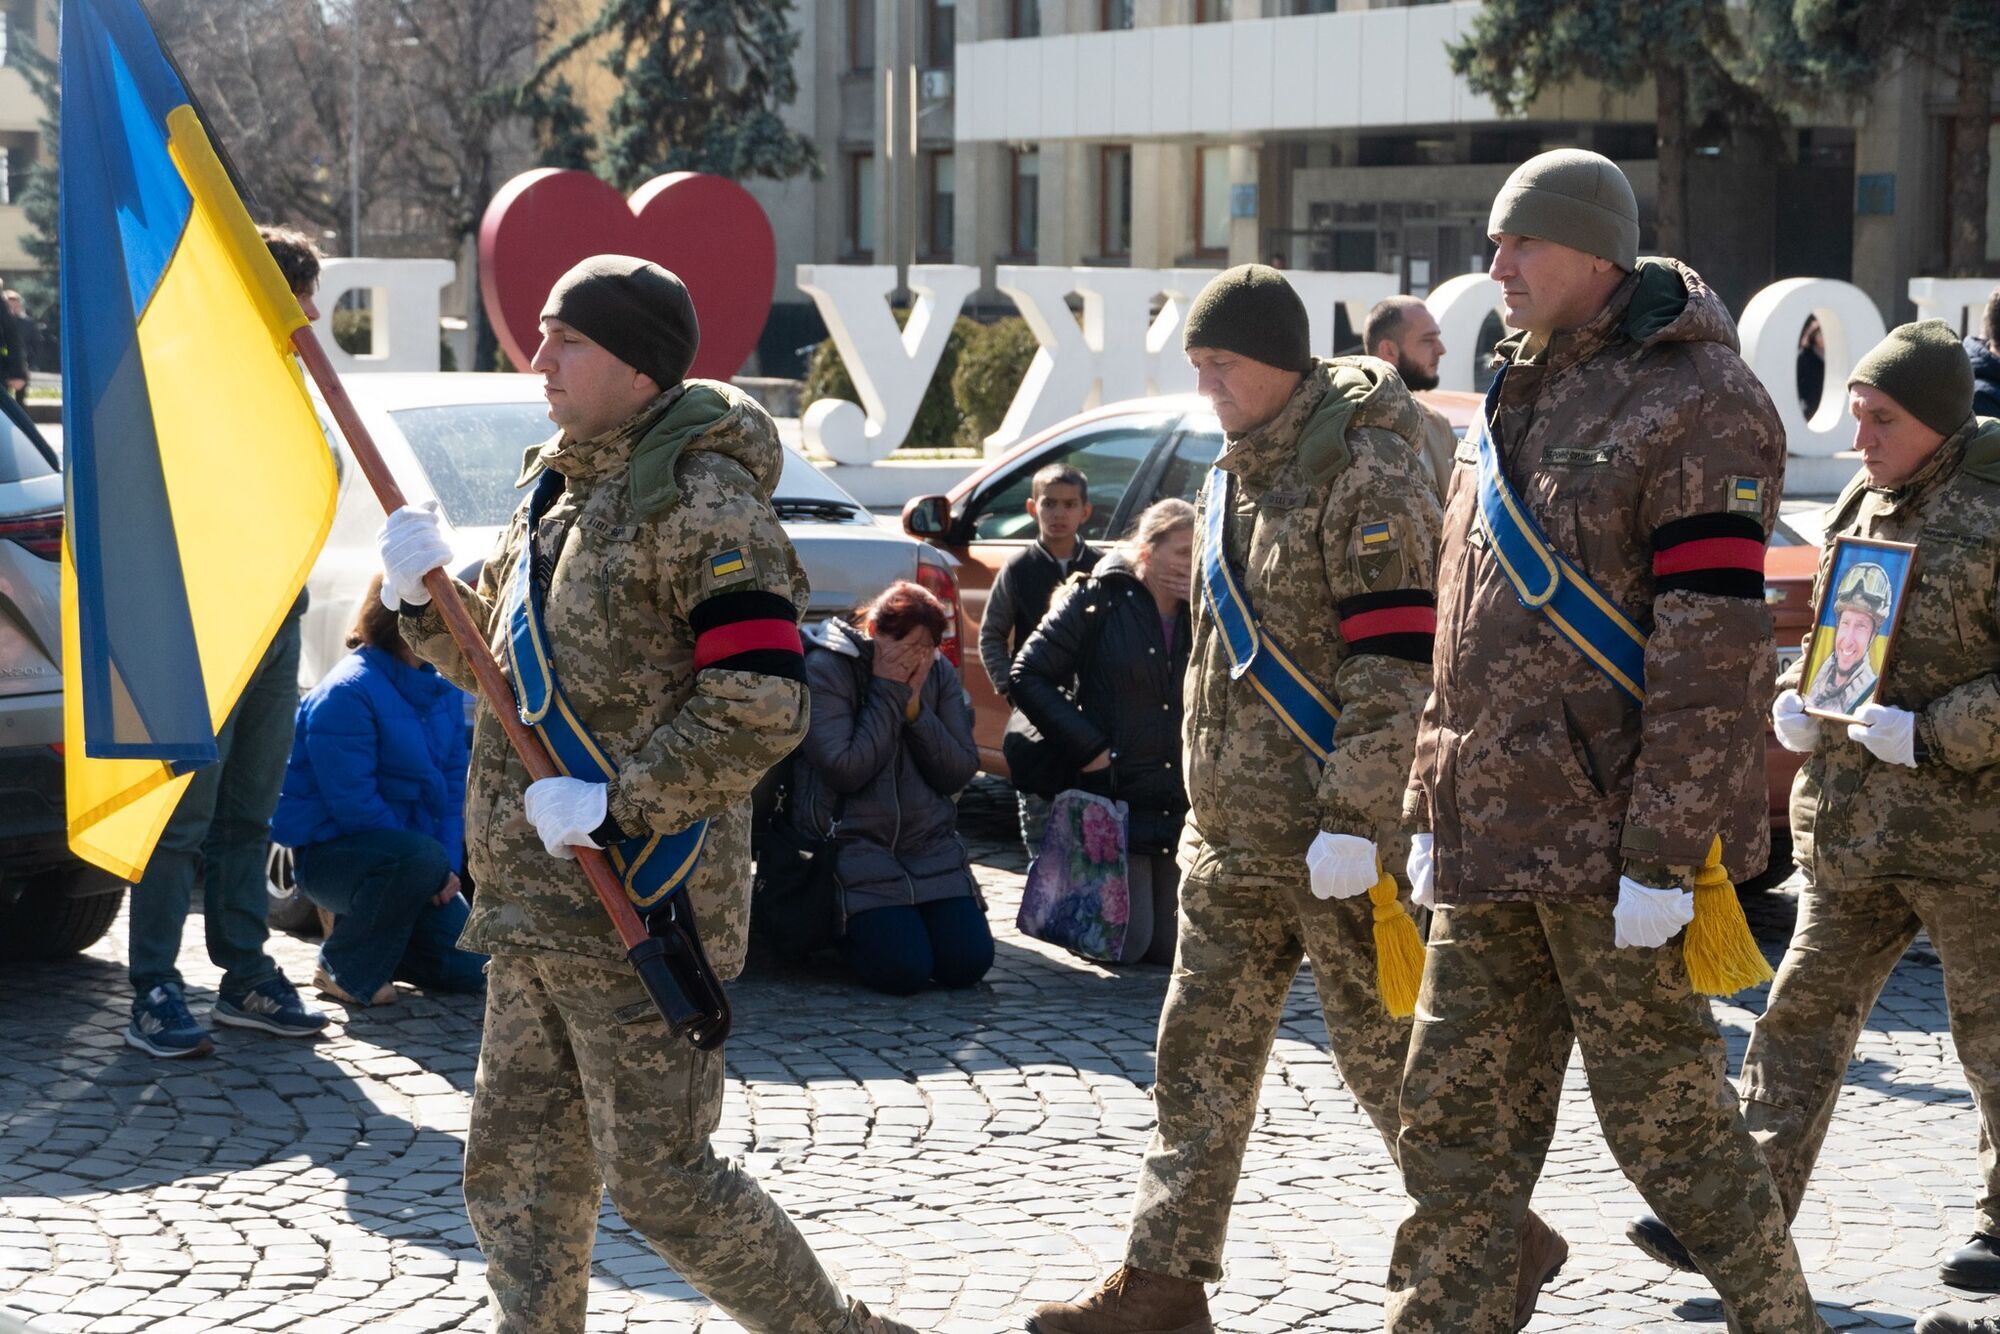 Оставил успешную карьеру, чтобы стать на защиту Украины: в Ужгороде попрощались с погибшим Героем. Фото